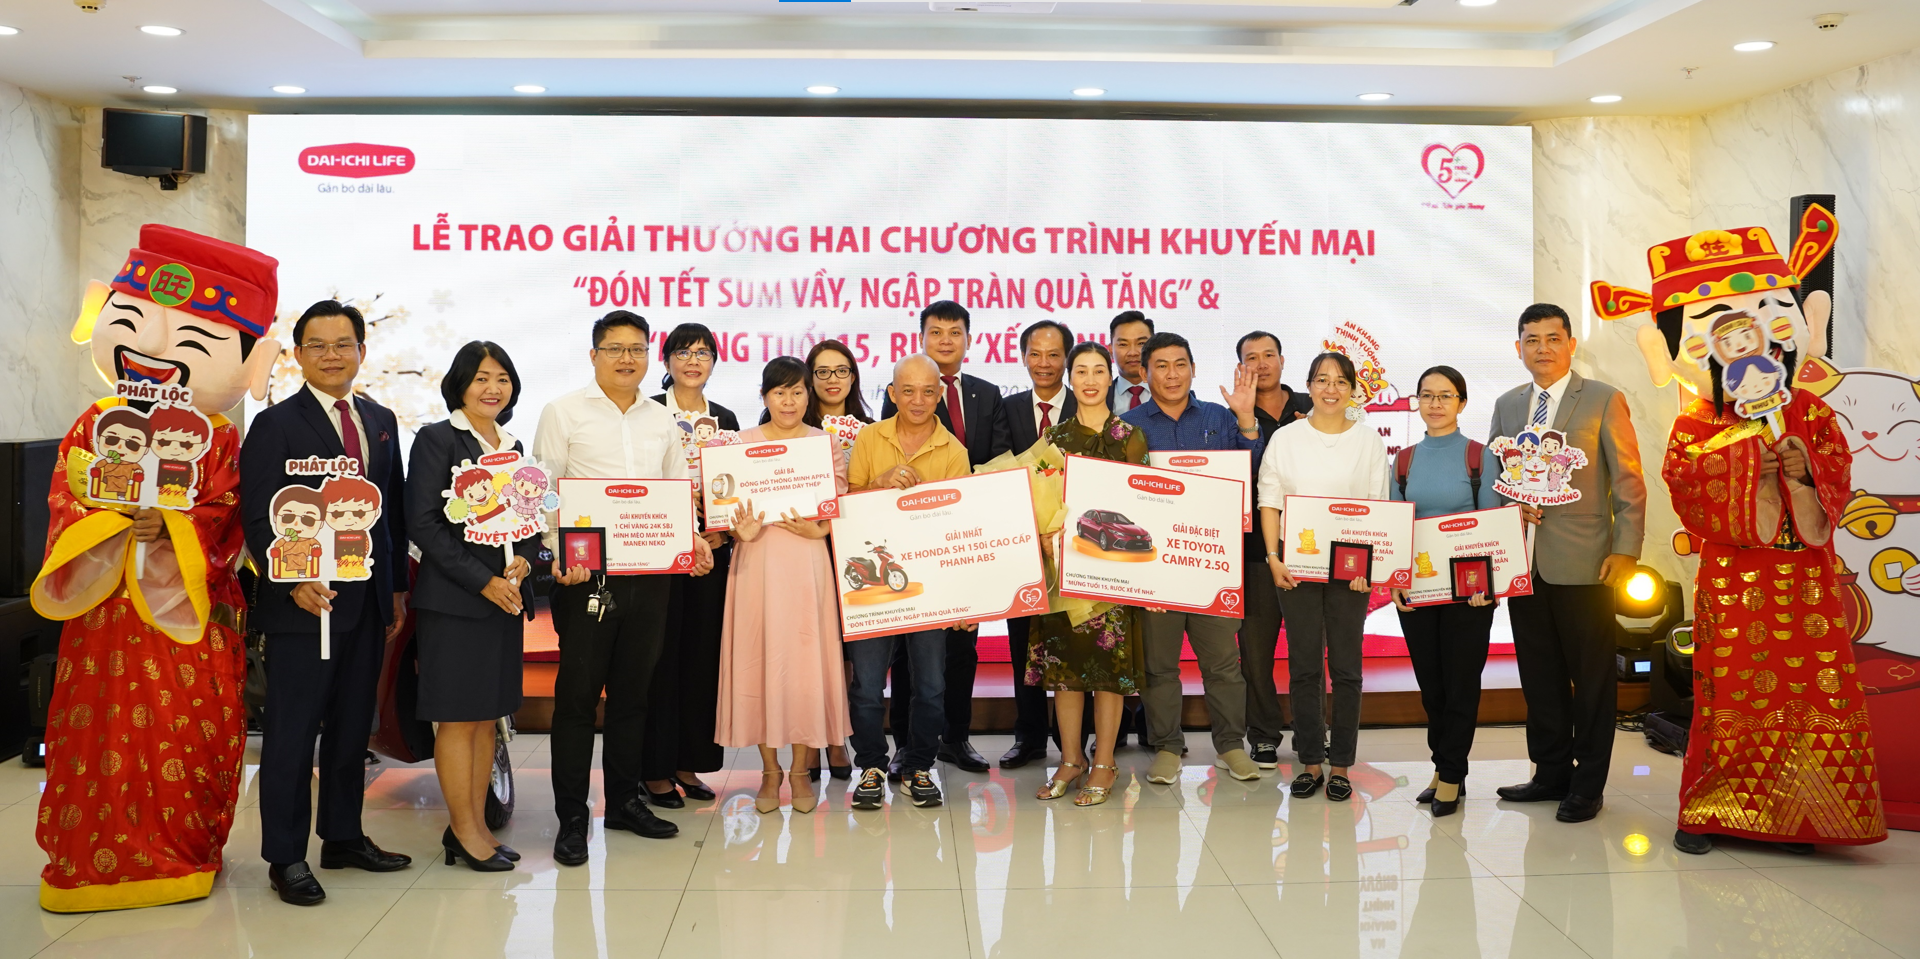 Dai-ichi Life Việt Nam tổ chức Lễ trao giải cho khách hàng trúng thưởng hai chương trình khuyến mại đặc biệt...